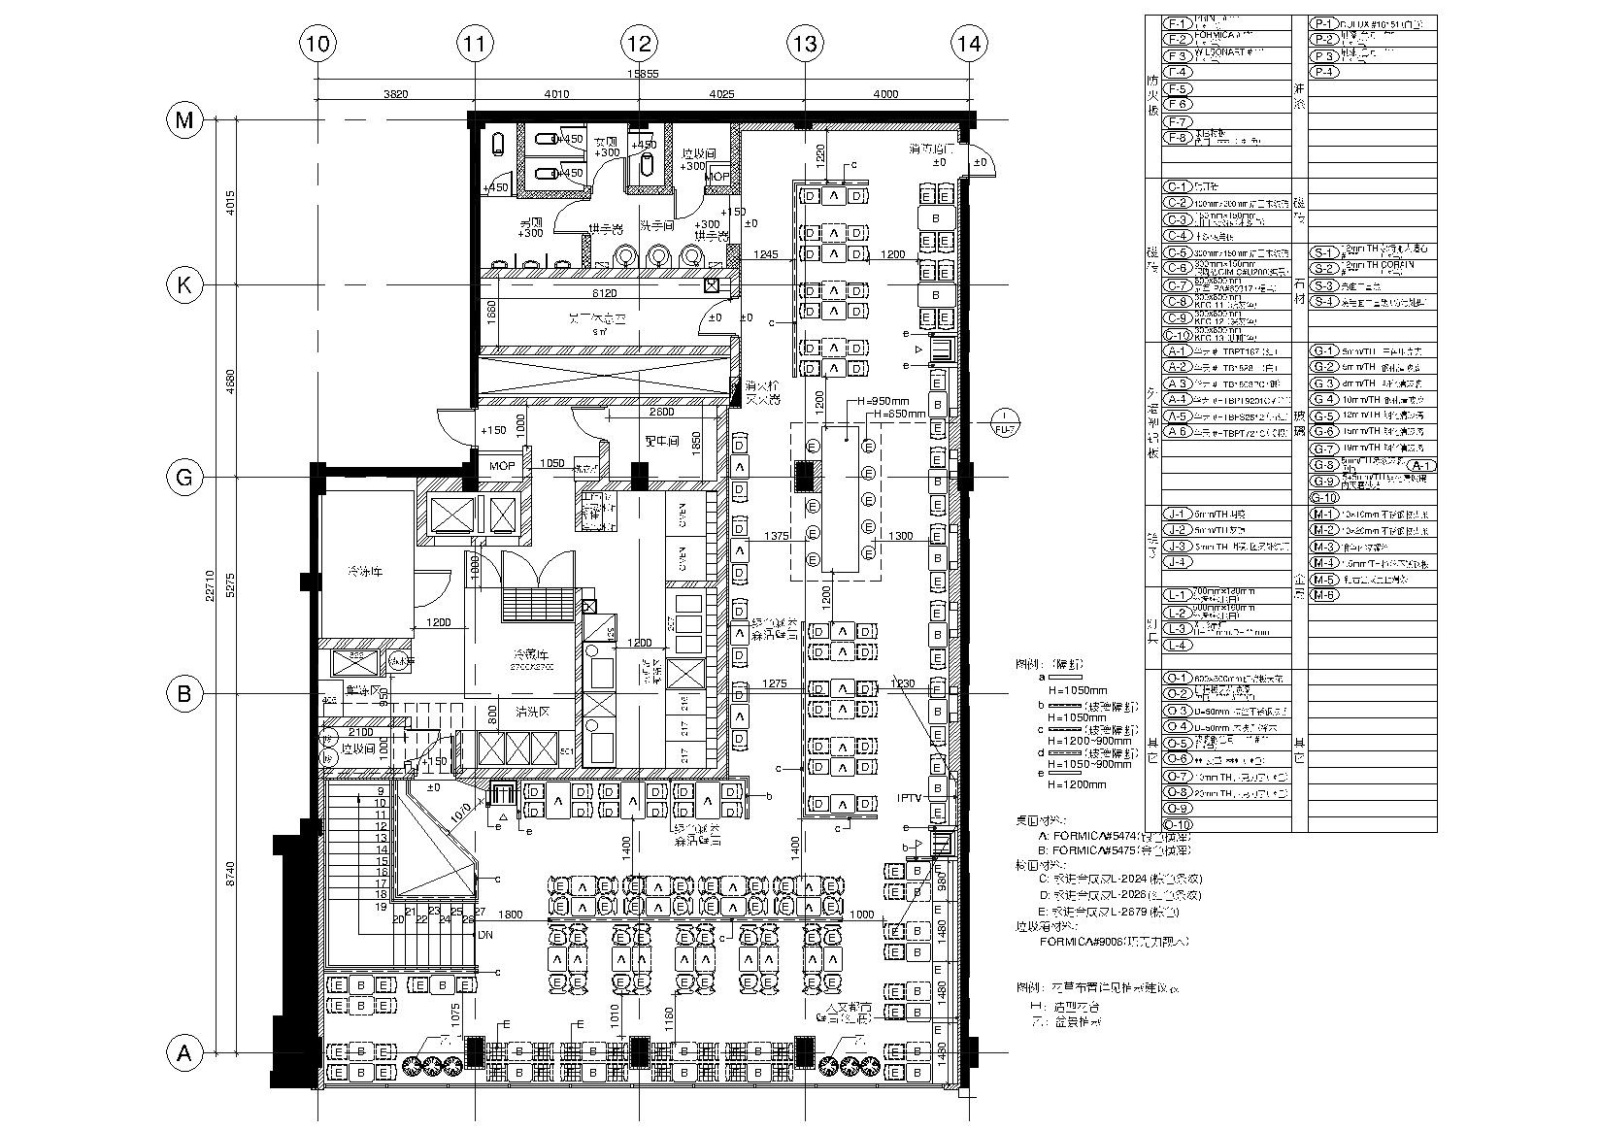 564㎡二层肯德基快餐厅室内装饰设计施工图施工图下.